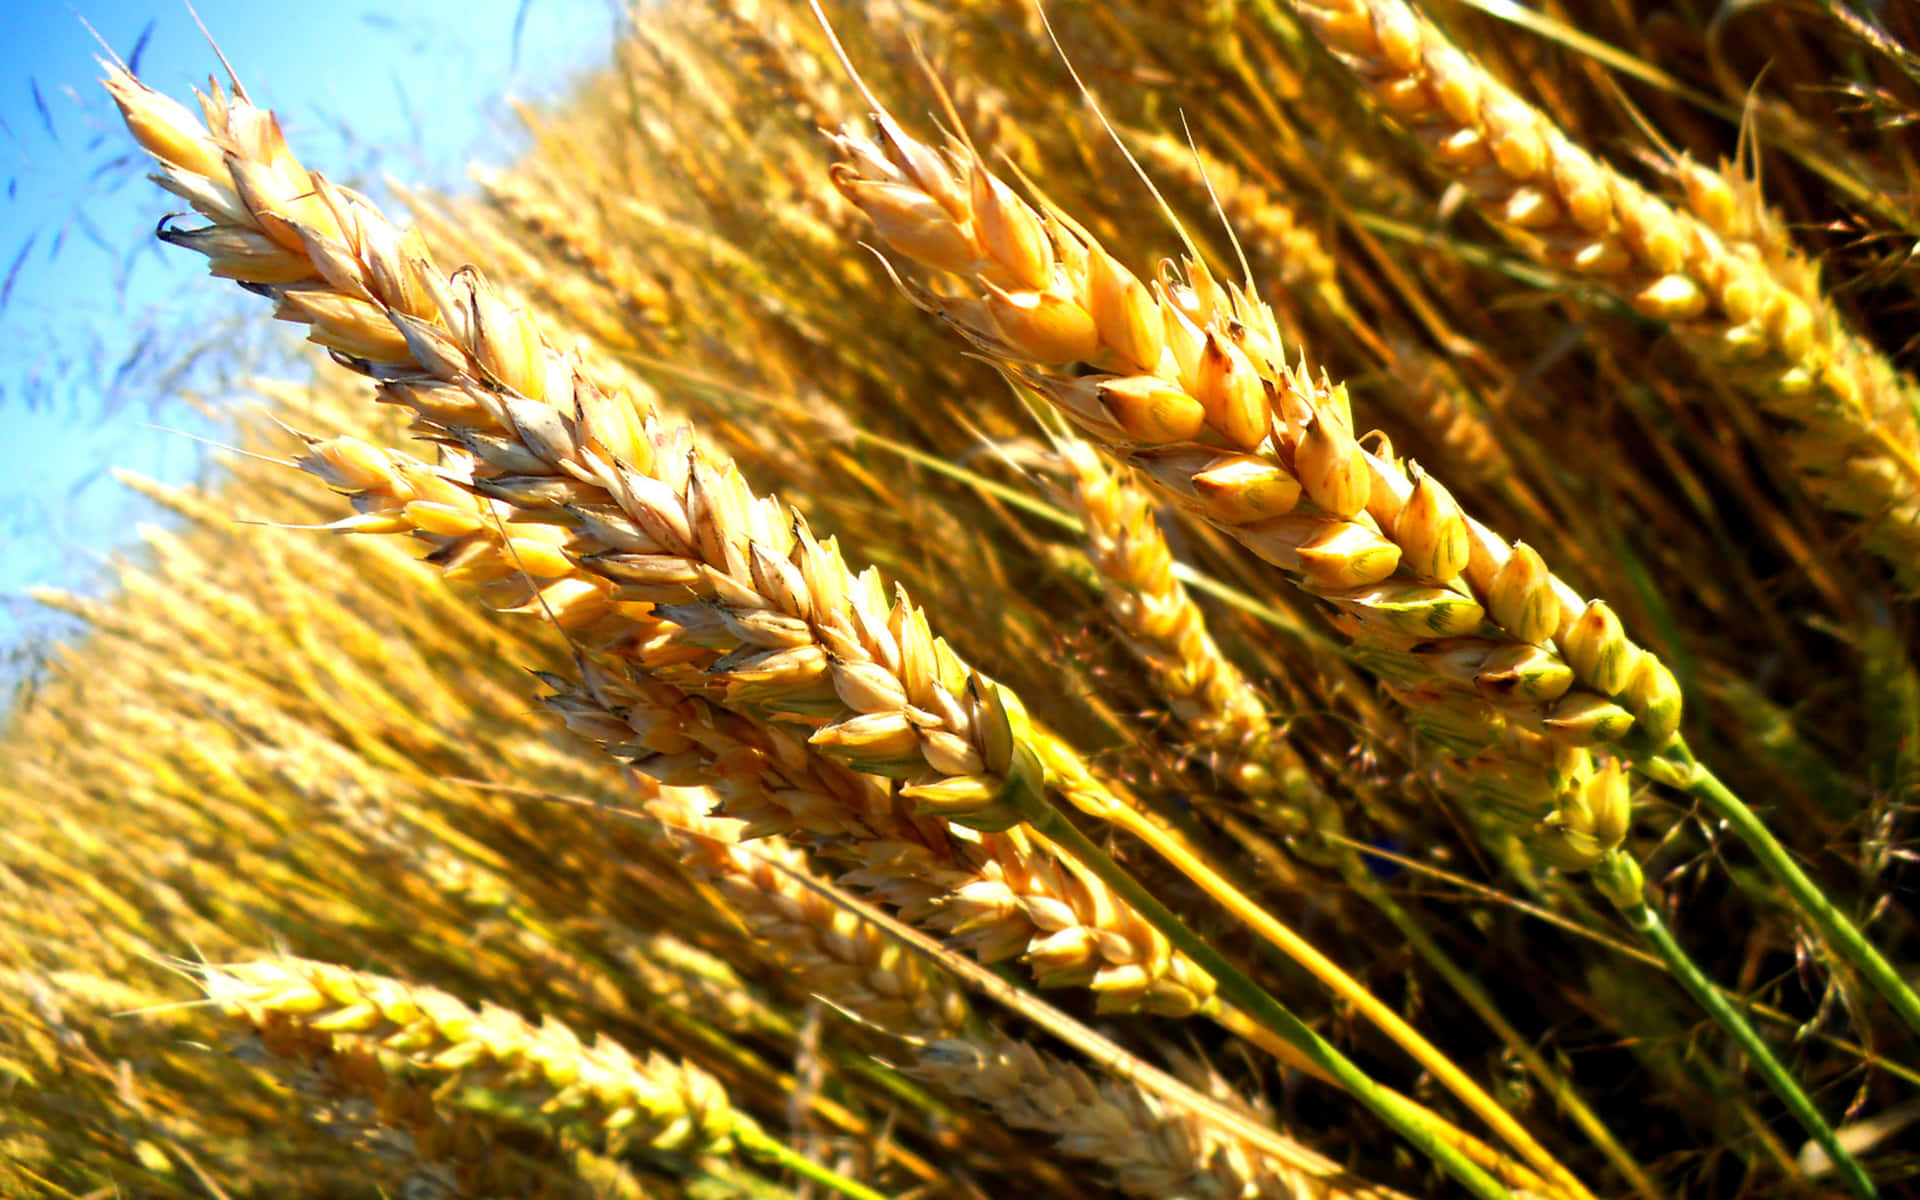 Golden Wheat Field Sunlit Wallpaper